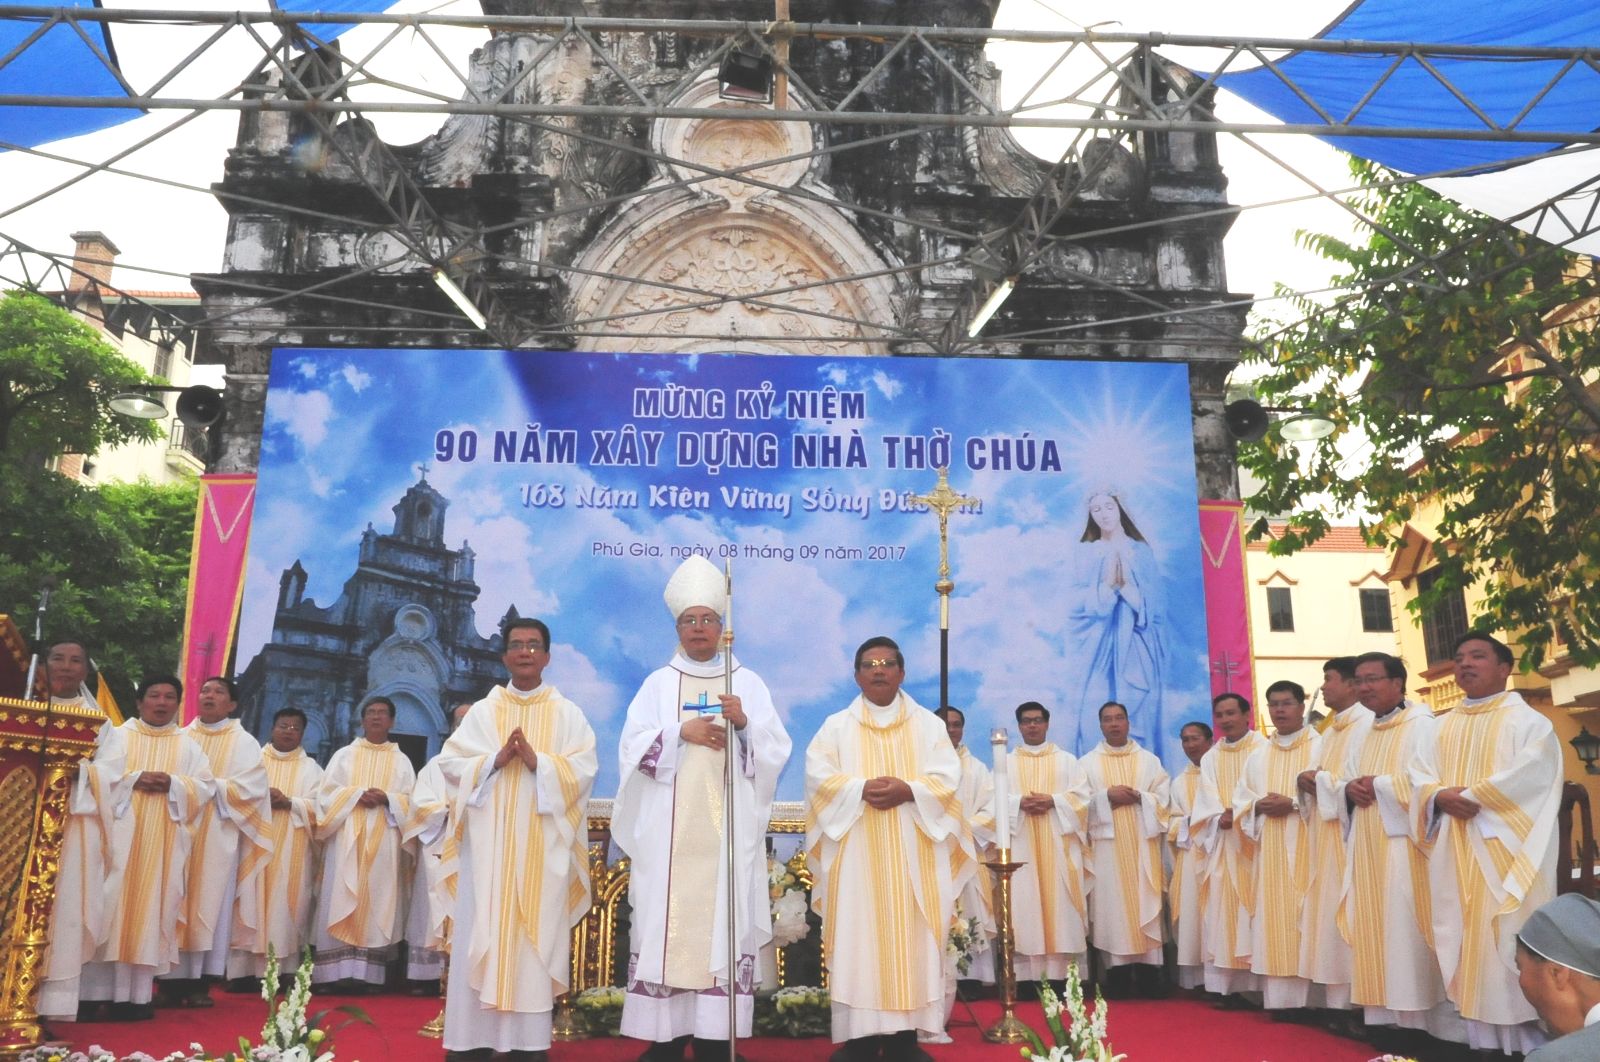 Đức Giám mục Ailosio Nguyễn Hùng Vị chụp ảnh lưu niệm cùng các quý cha.